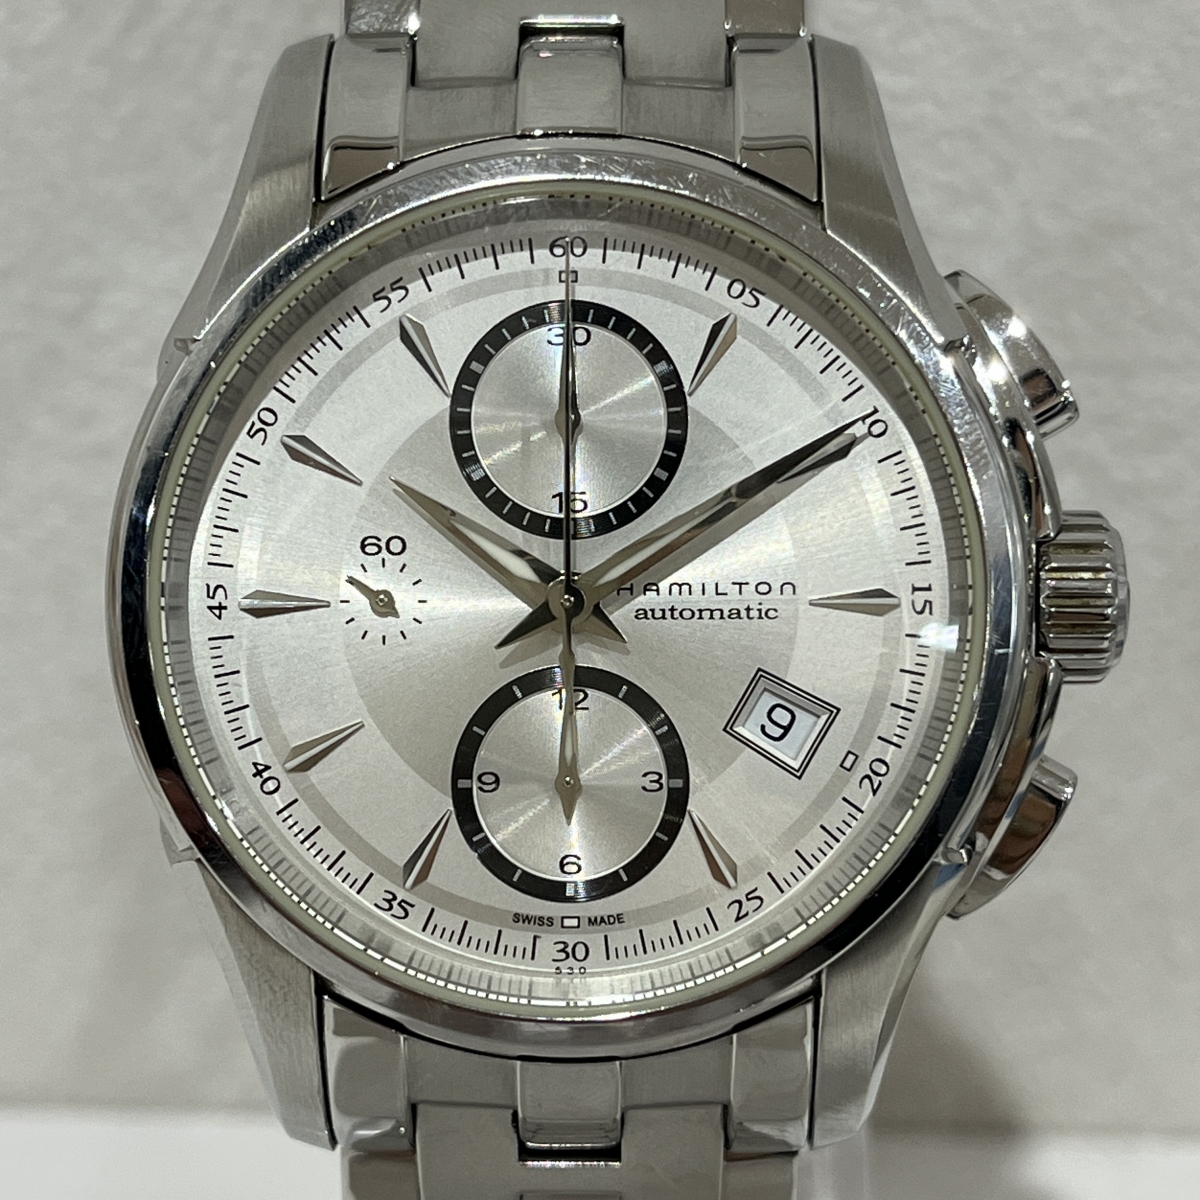 ハミルトンのH326160 ジャズマスター クロノグラフ デイト 自動巻き腕時計の買取実績です。